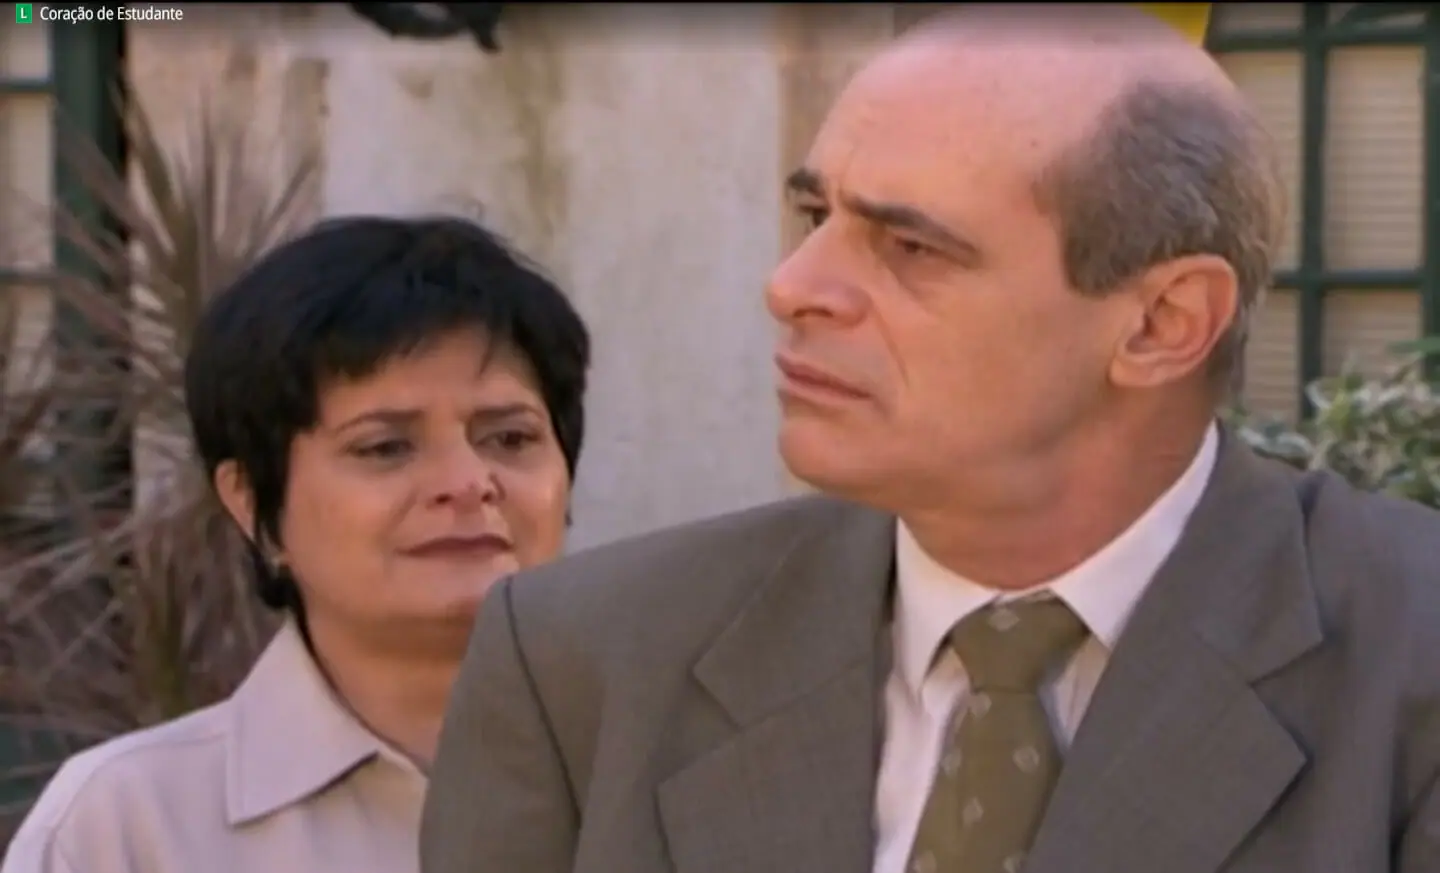 Lígia (Jussara Freire) e Raul (Marcos Caruso) em Coração de Estudante